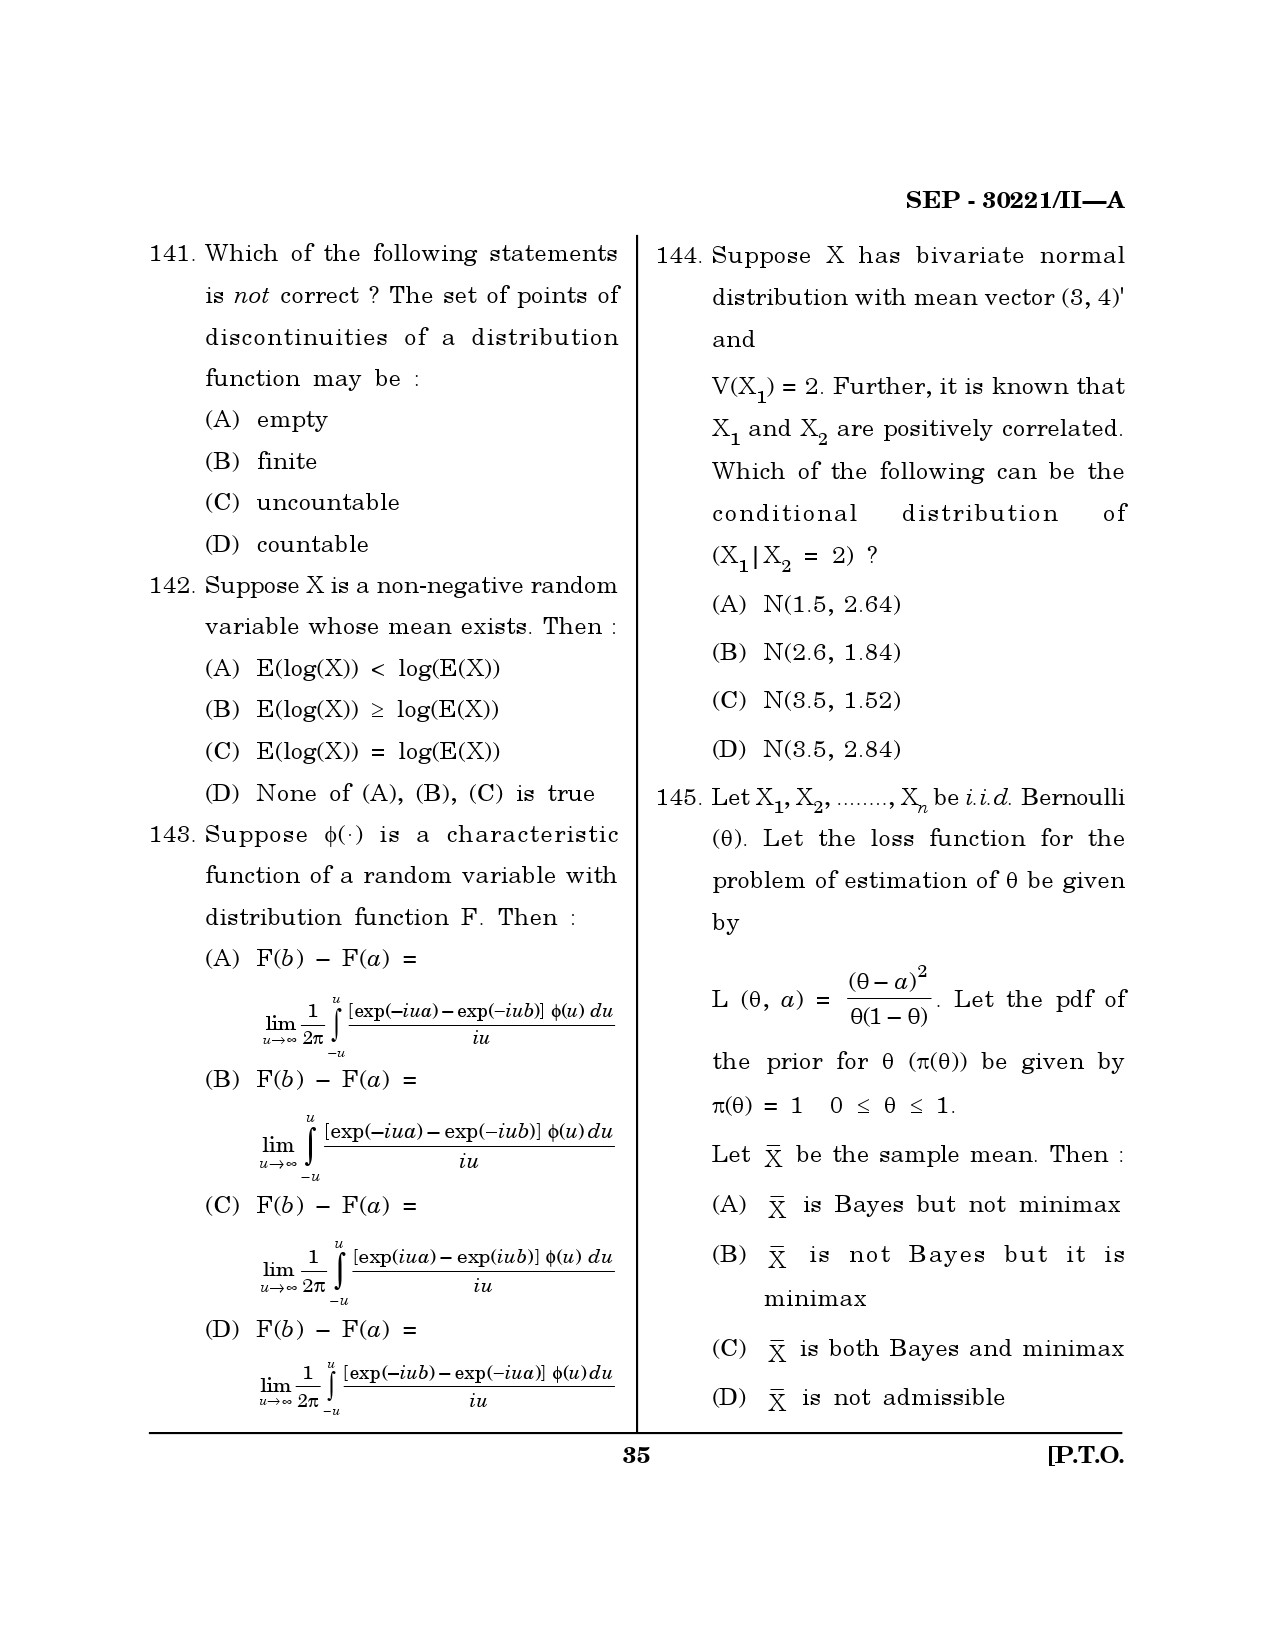 Maharashtra SET Mathematical Sciences Exam Question Paper September 2021 34